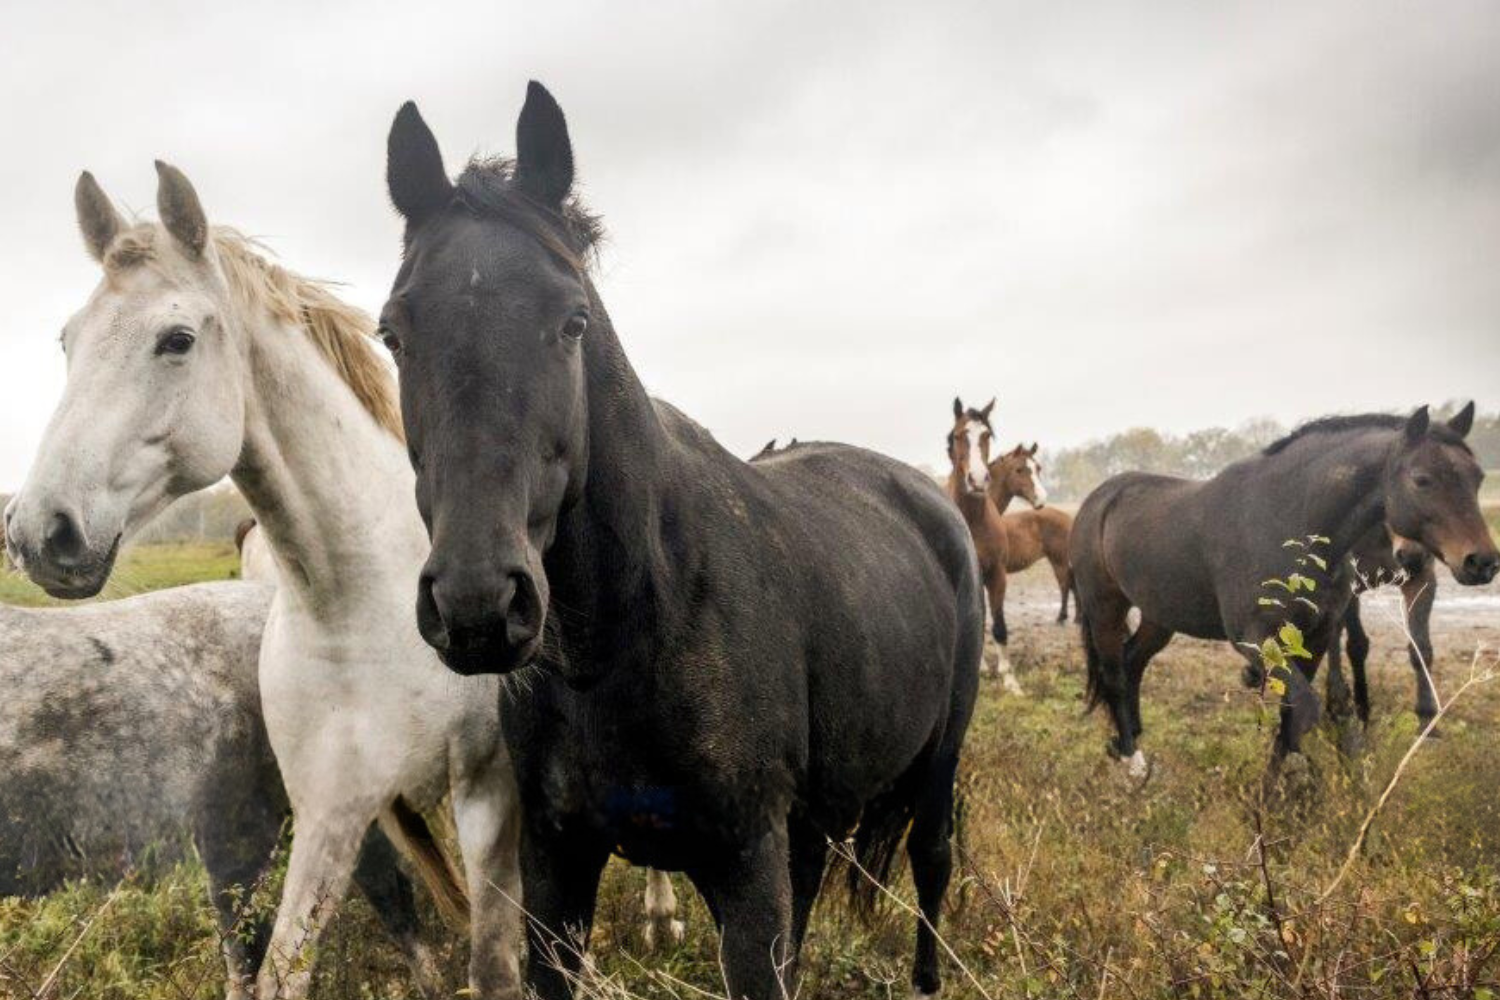 På Suderby ridskola på Gotland är nästan alla hästar uppfödda på gården och familjen känner var och en sedan de var föl. Hästarna går i stora hagar i stora flockar, något som ger trygga och hållbara hästar.  trygga hästar.